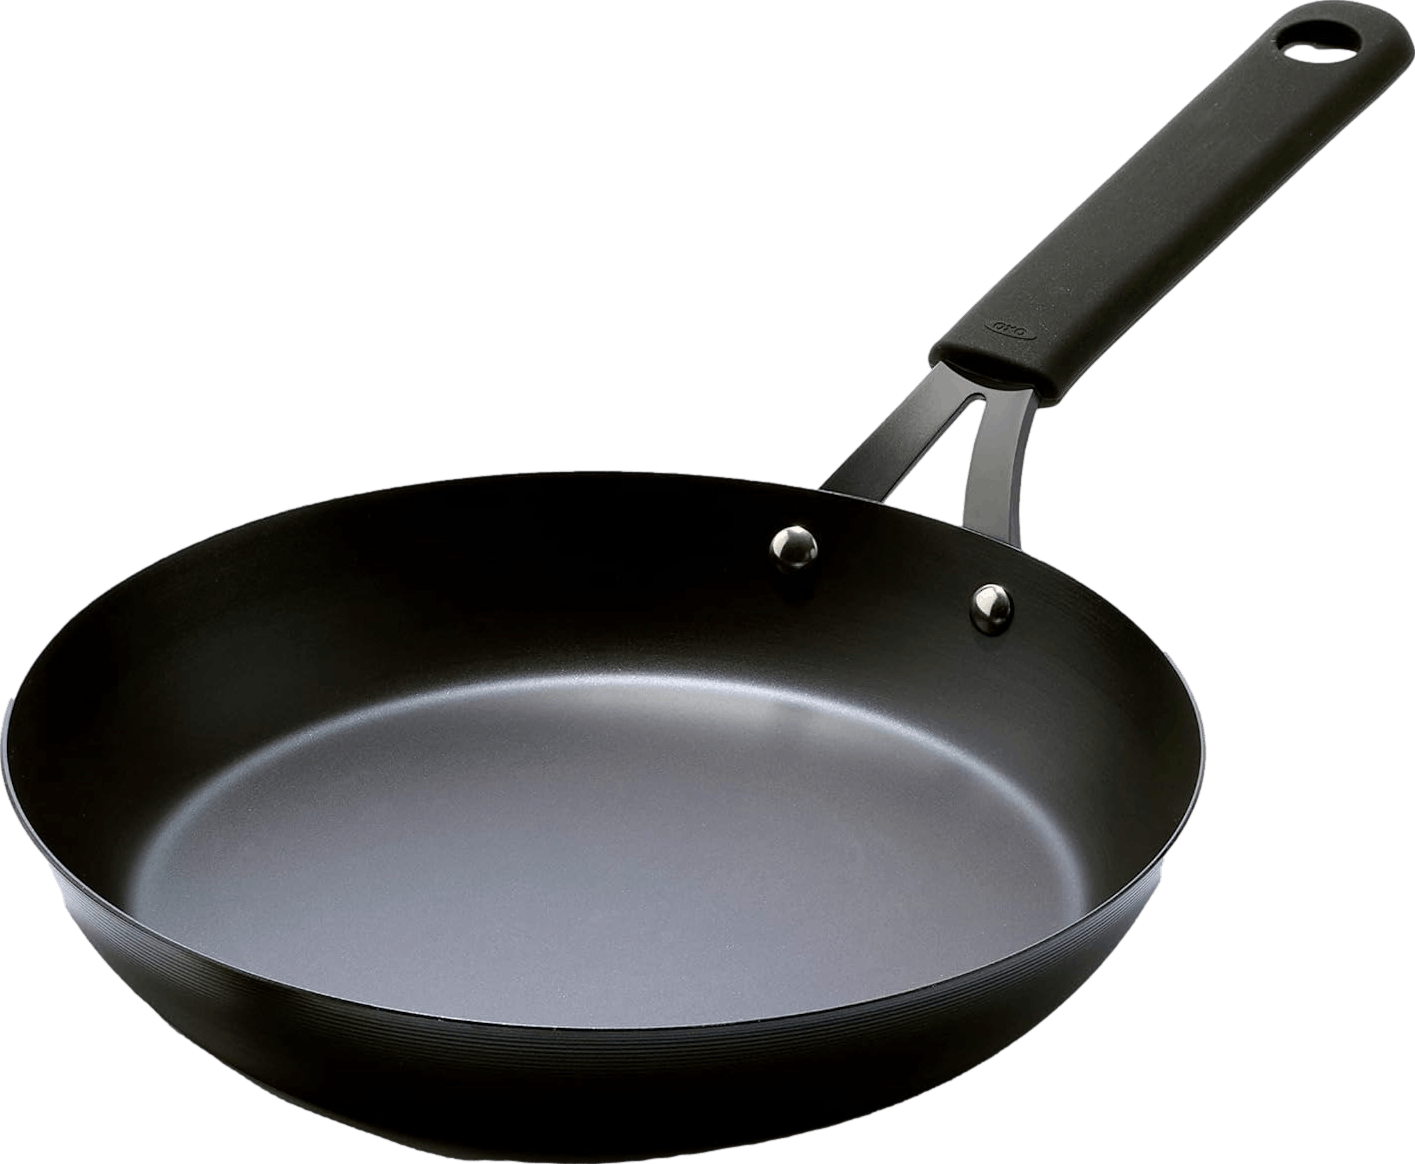  OXO Outdoor Pre-Seasoned Carbon Steel 8 Frying Pan